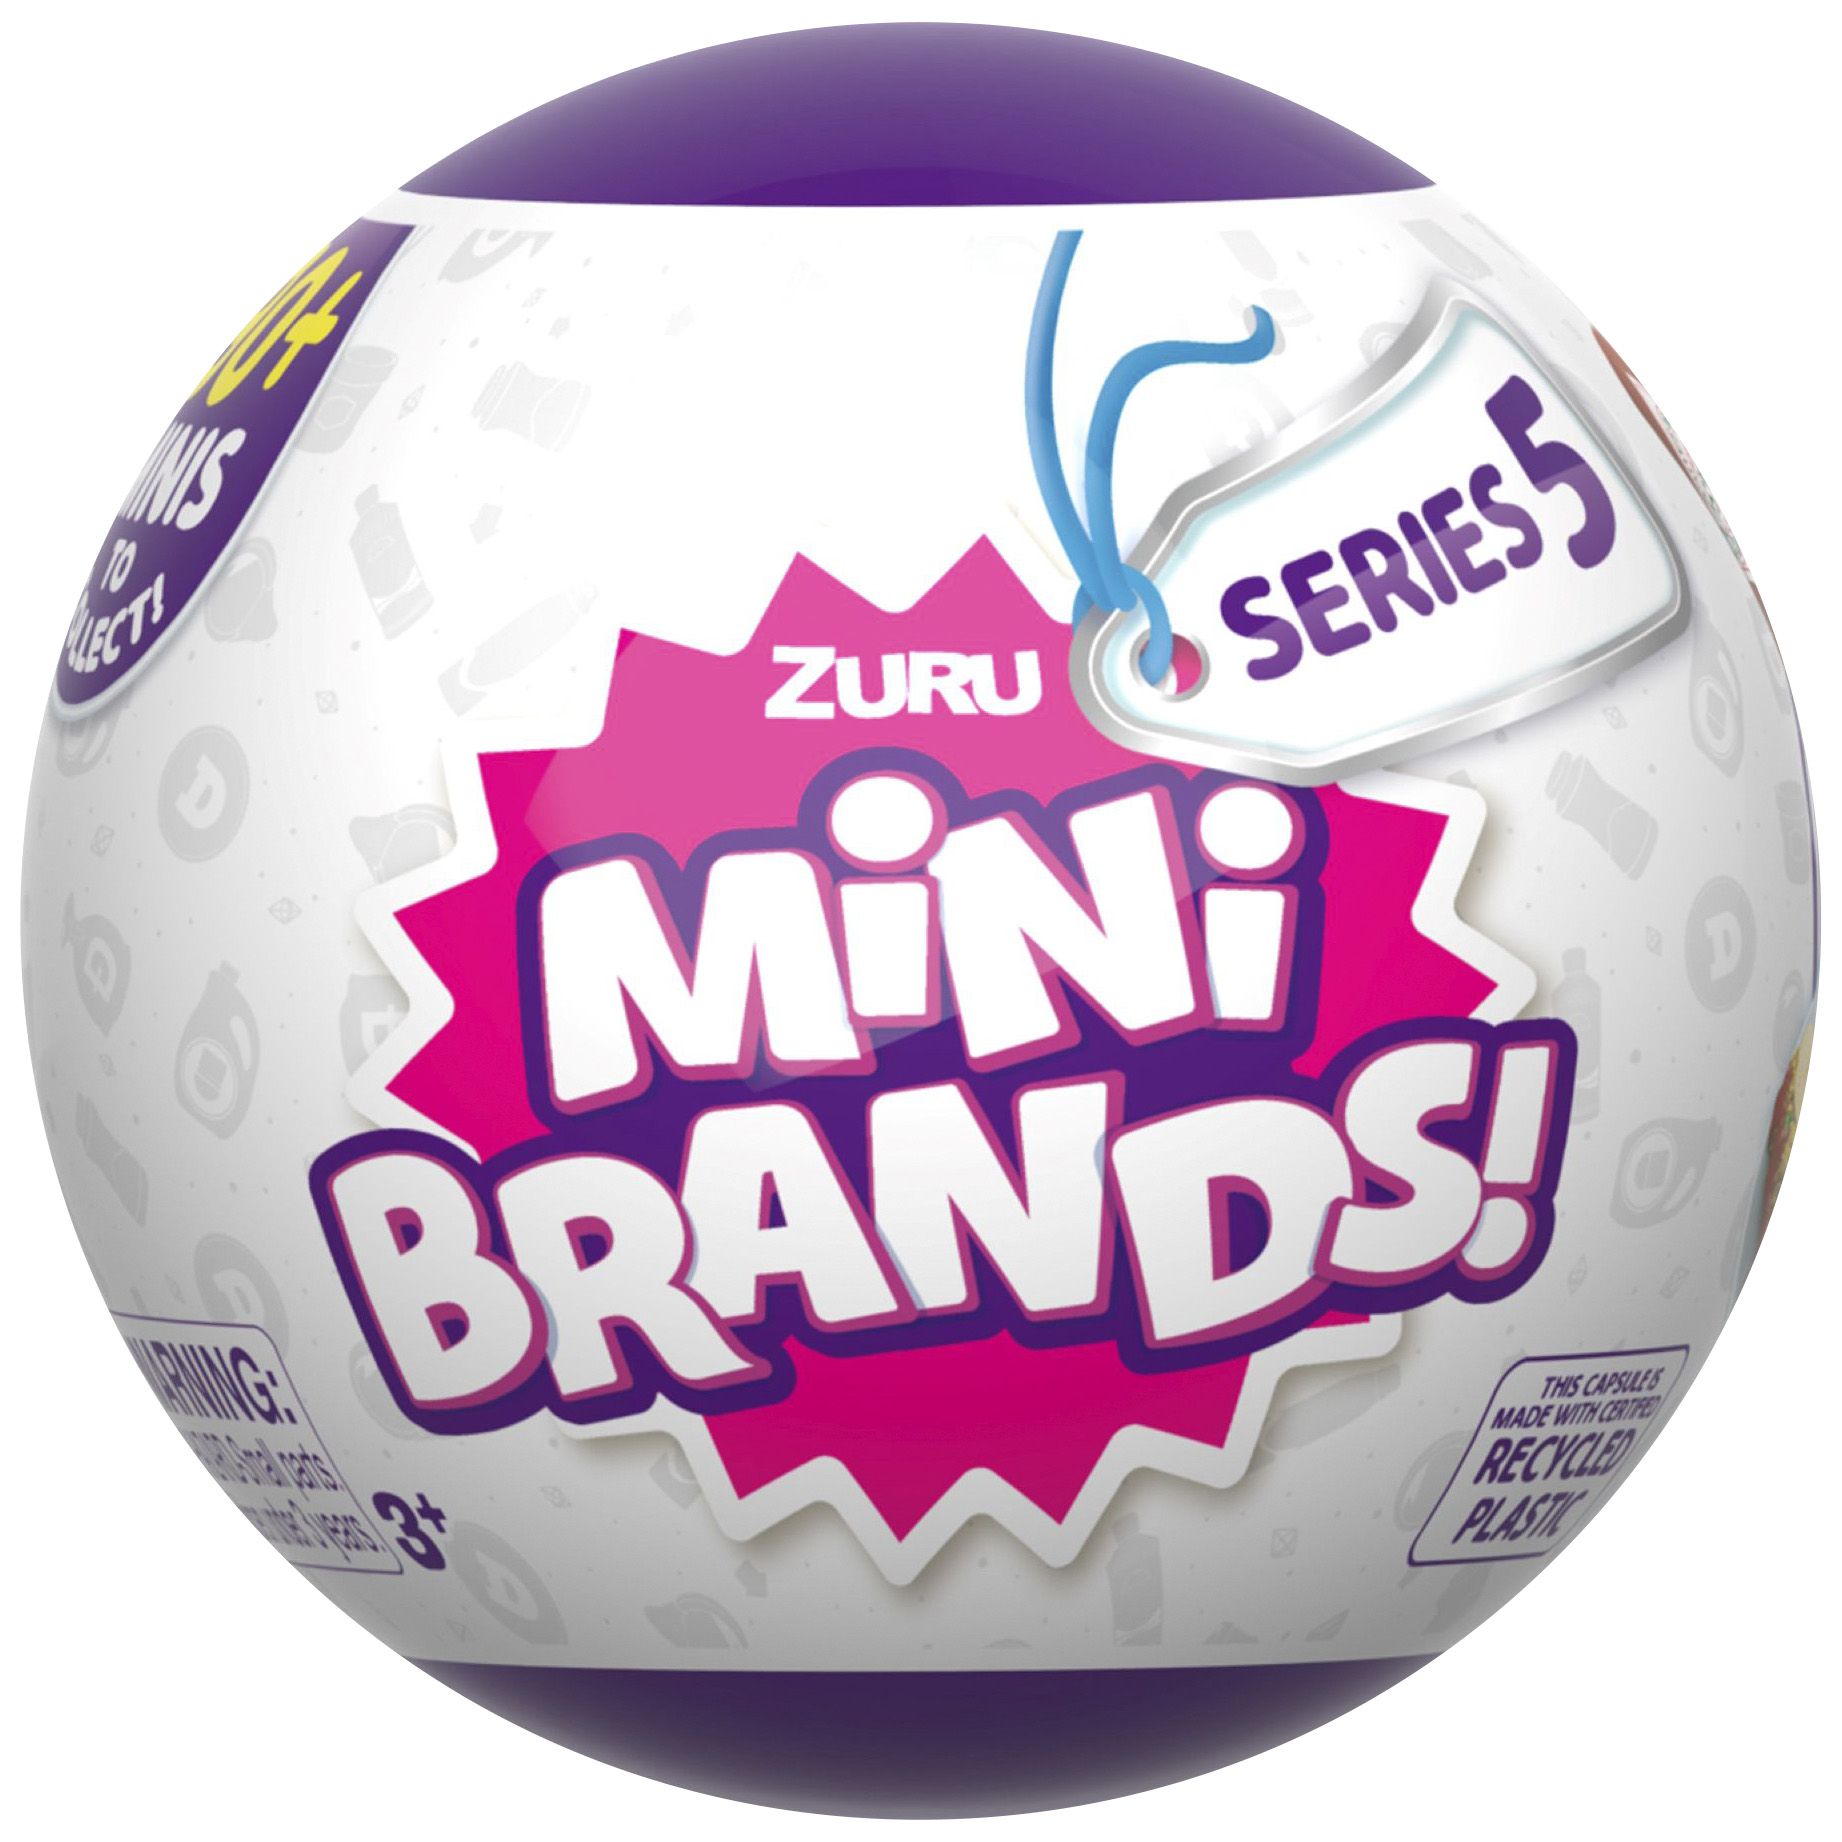 zuru 5 surprise mini brands series 2 single, Five Below